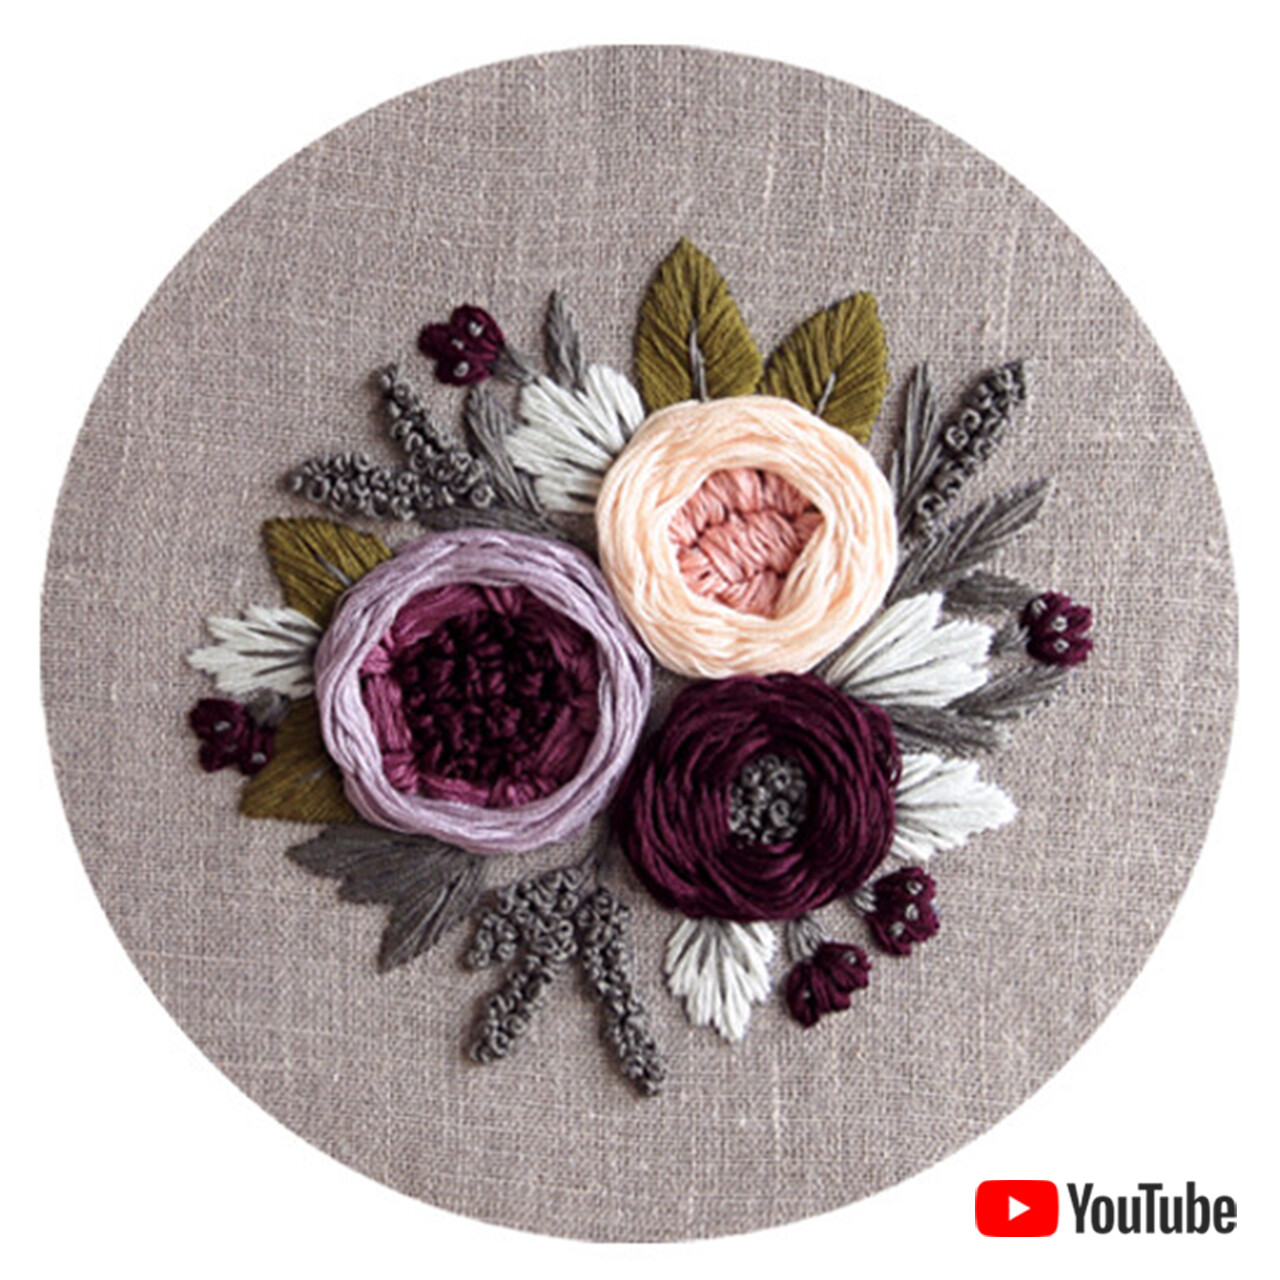 Схема для вышивки+ видео урок "Фиолетовые и персиковый пионы"